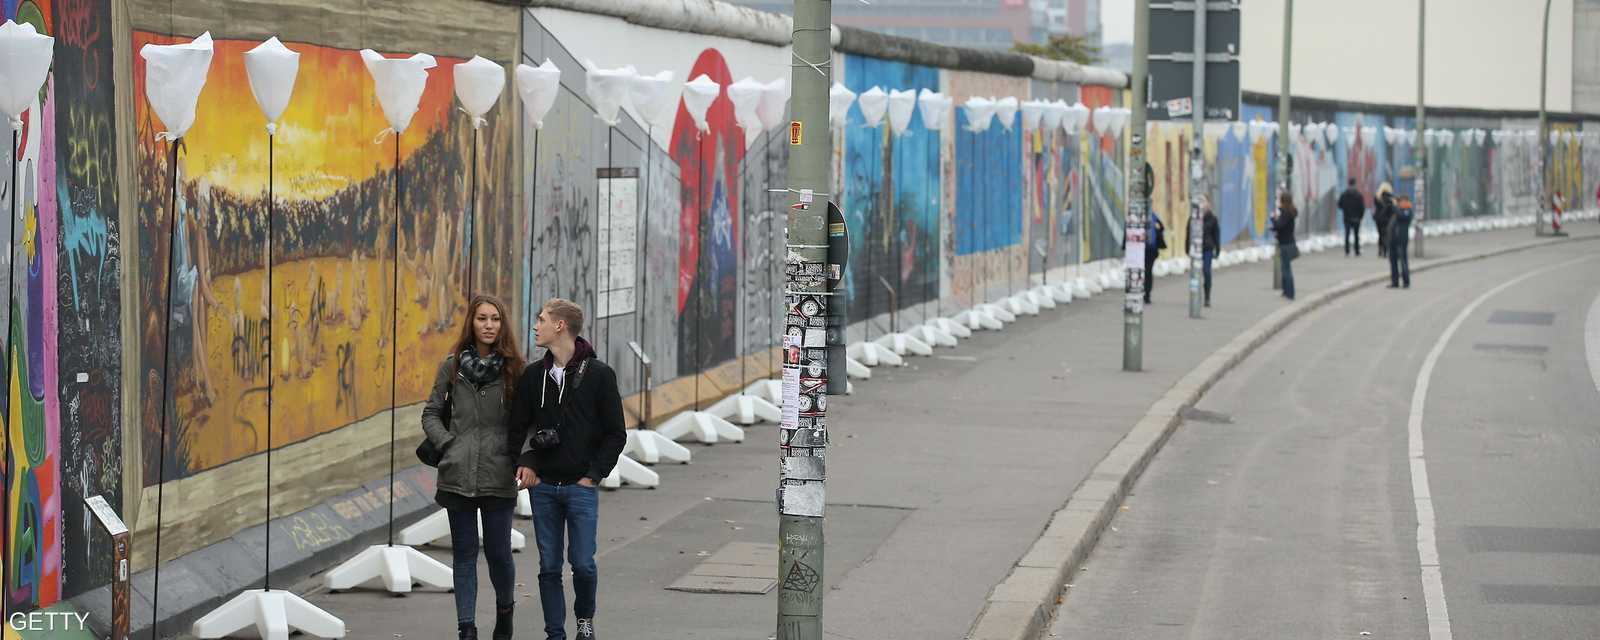 ما تبقى من جدار برلين الذي كان يفصل شطريها الغربي عن الشرقي